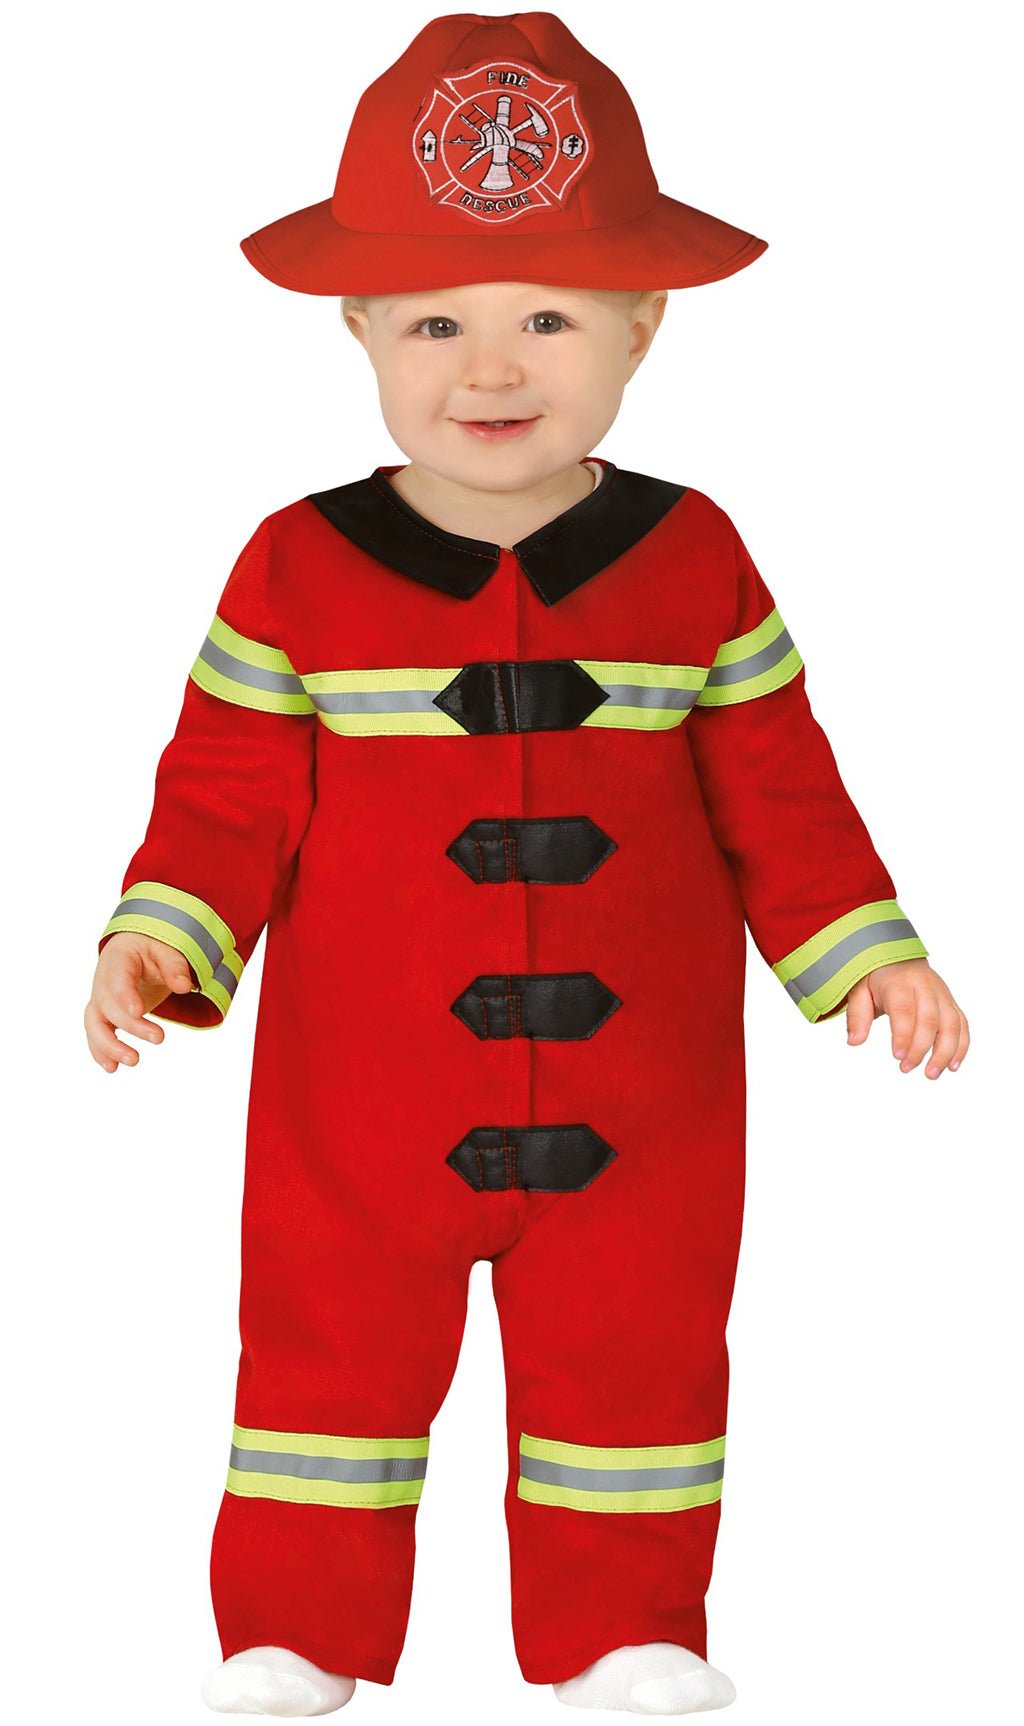 Comprar online Disfraz de Bombero Rescate para beb